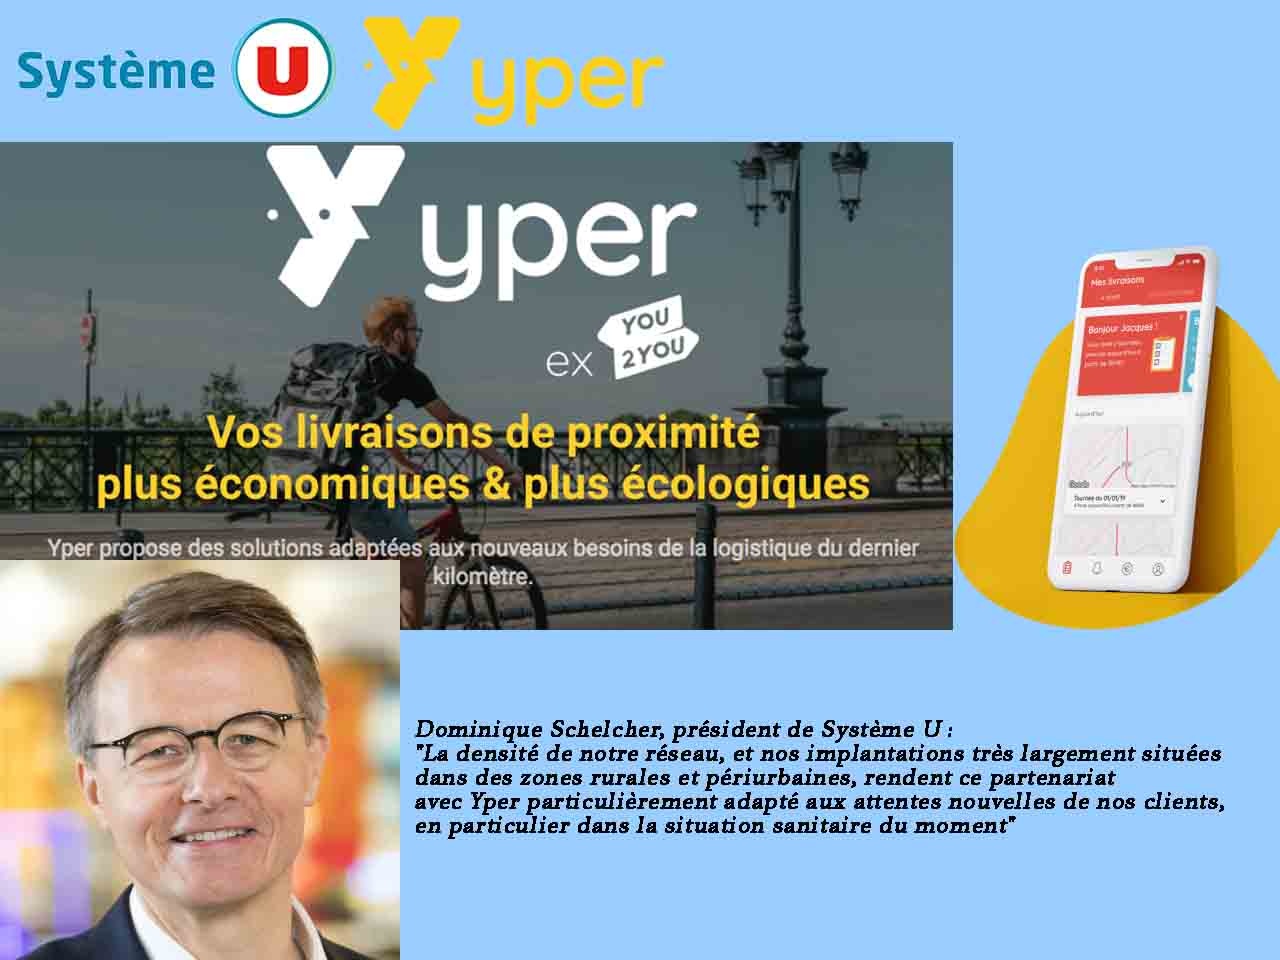 Système U complète son offre de livraison collaborative à domicile avec Yper